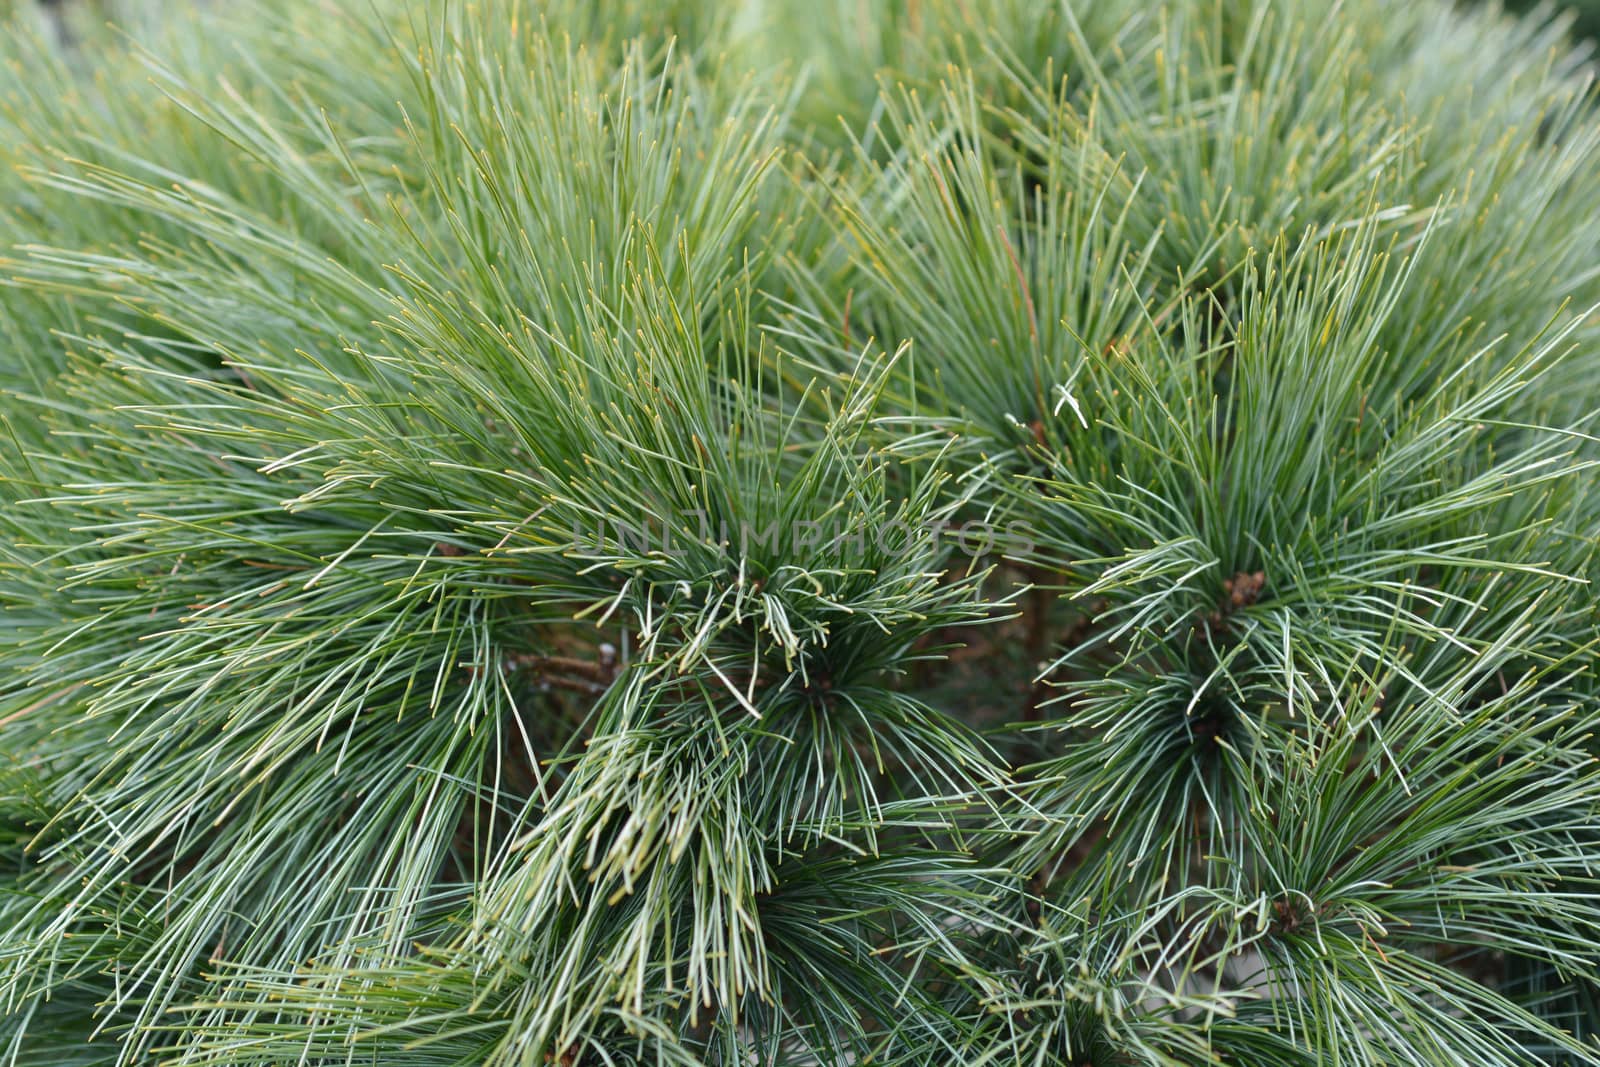 Eastern white pine Radiata - Latin name - Pinus strobus Radiata